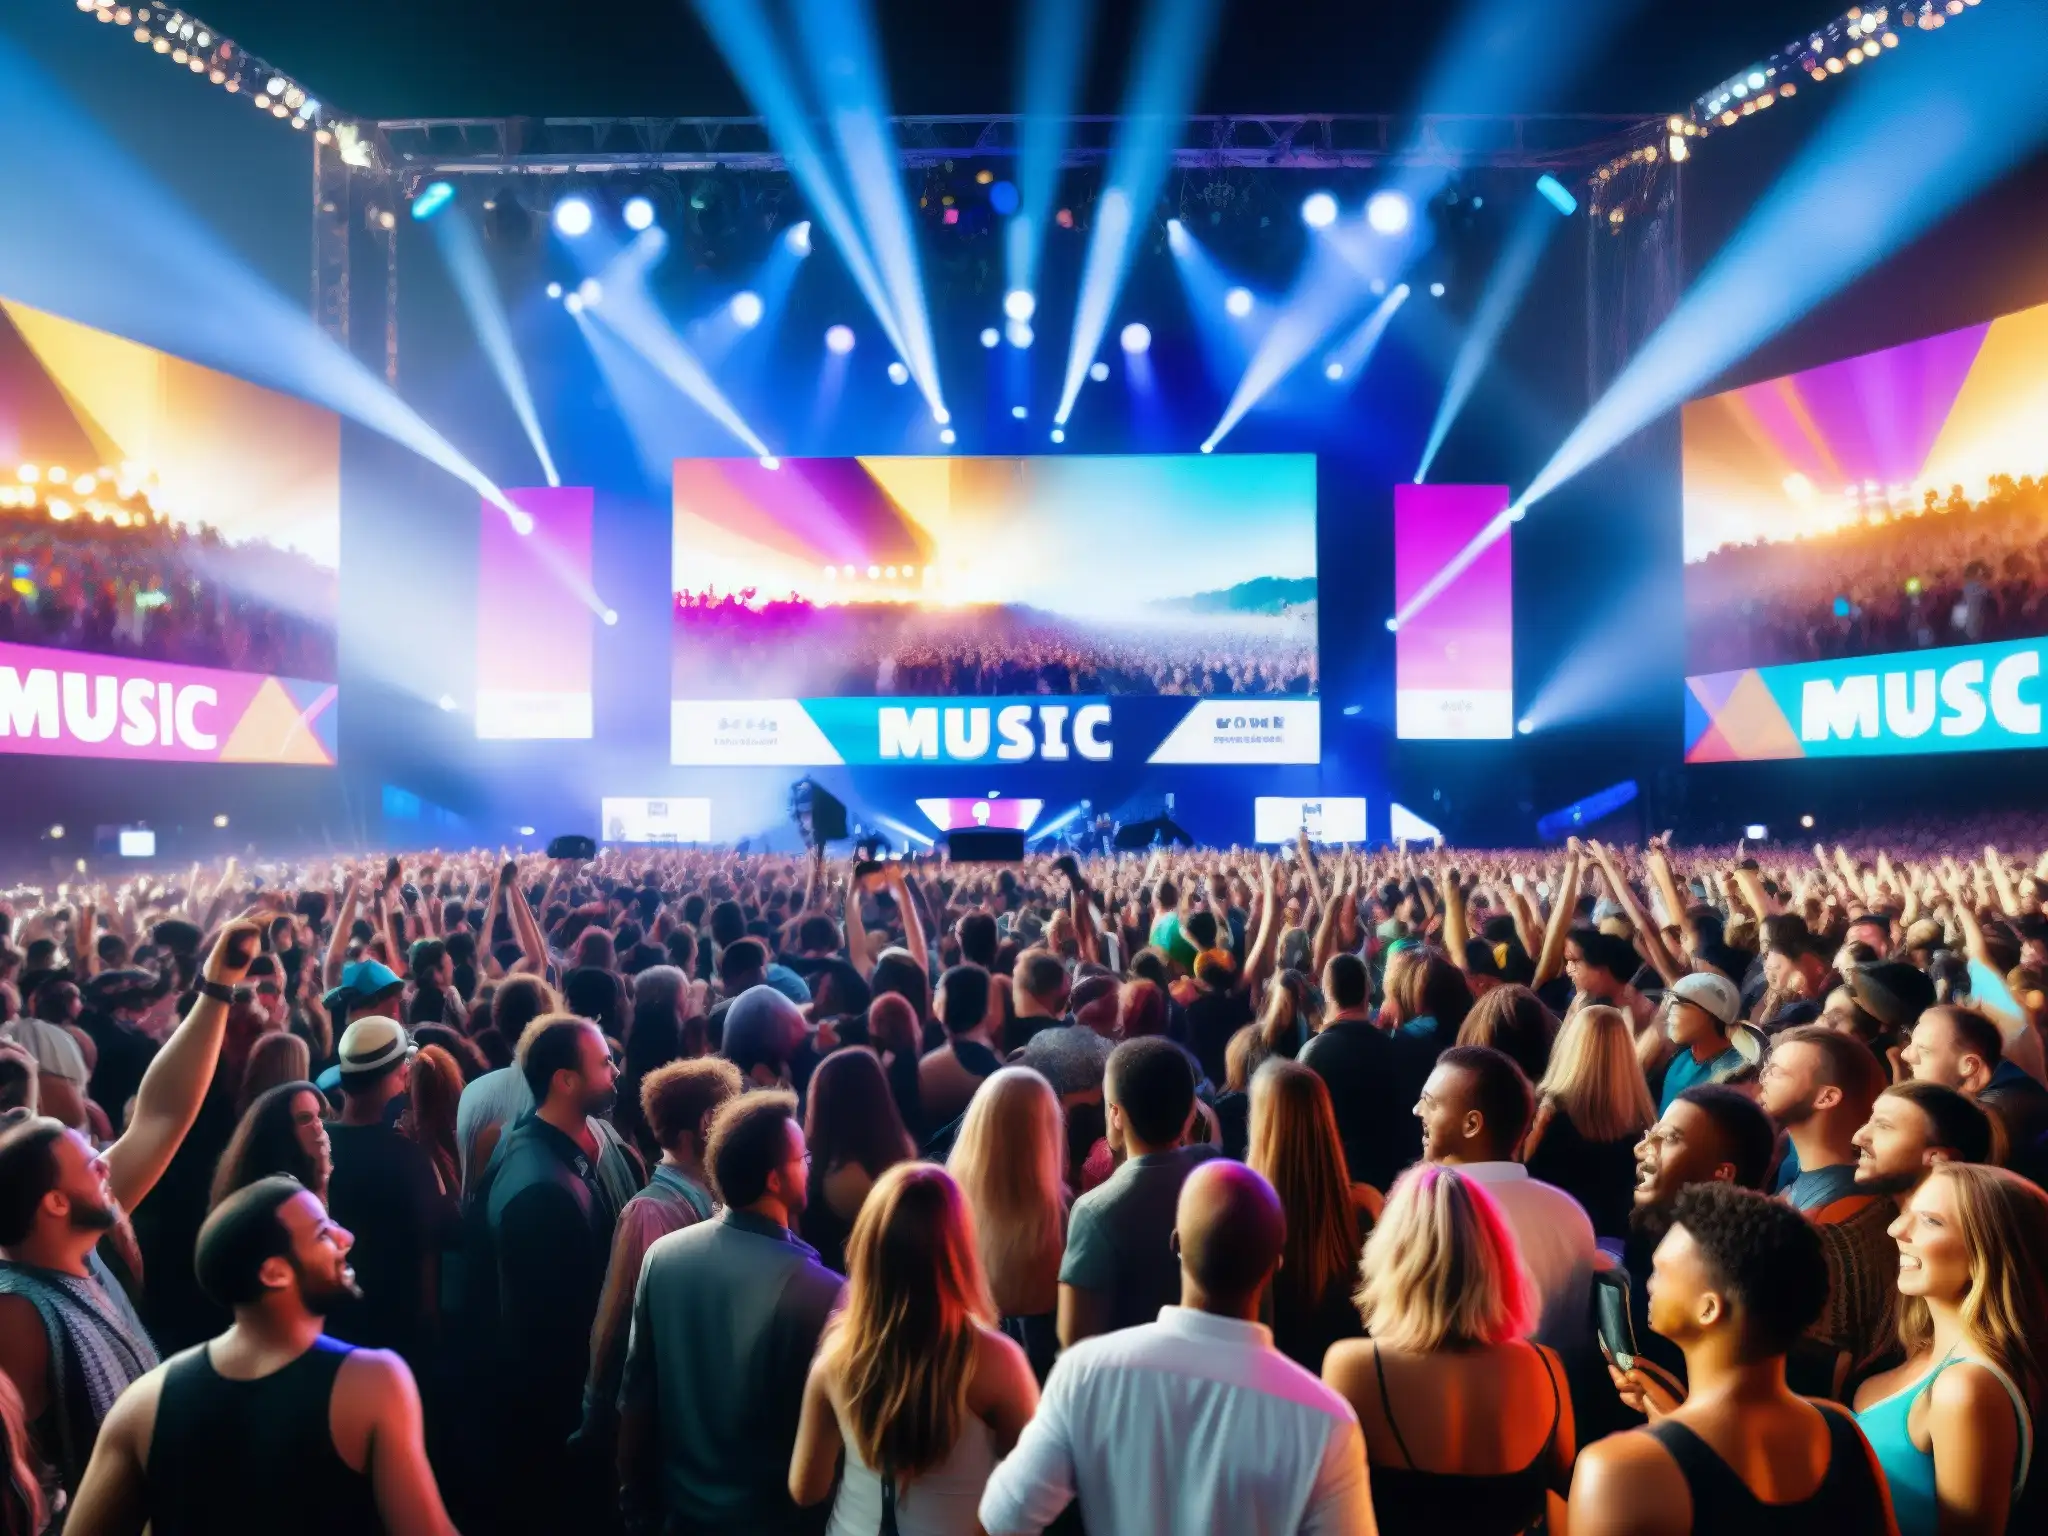 Un festival de música vibrante y lleno de energía, con fans entusiastas disfrutando de un concierto en vivo